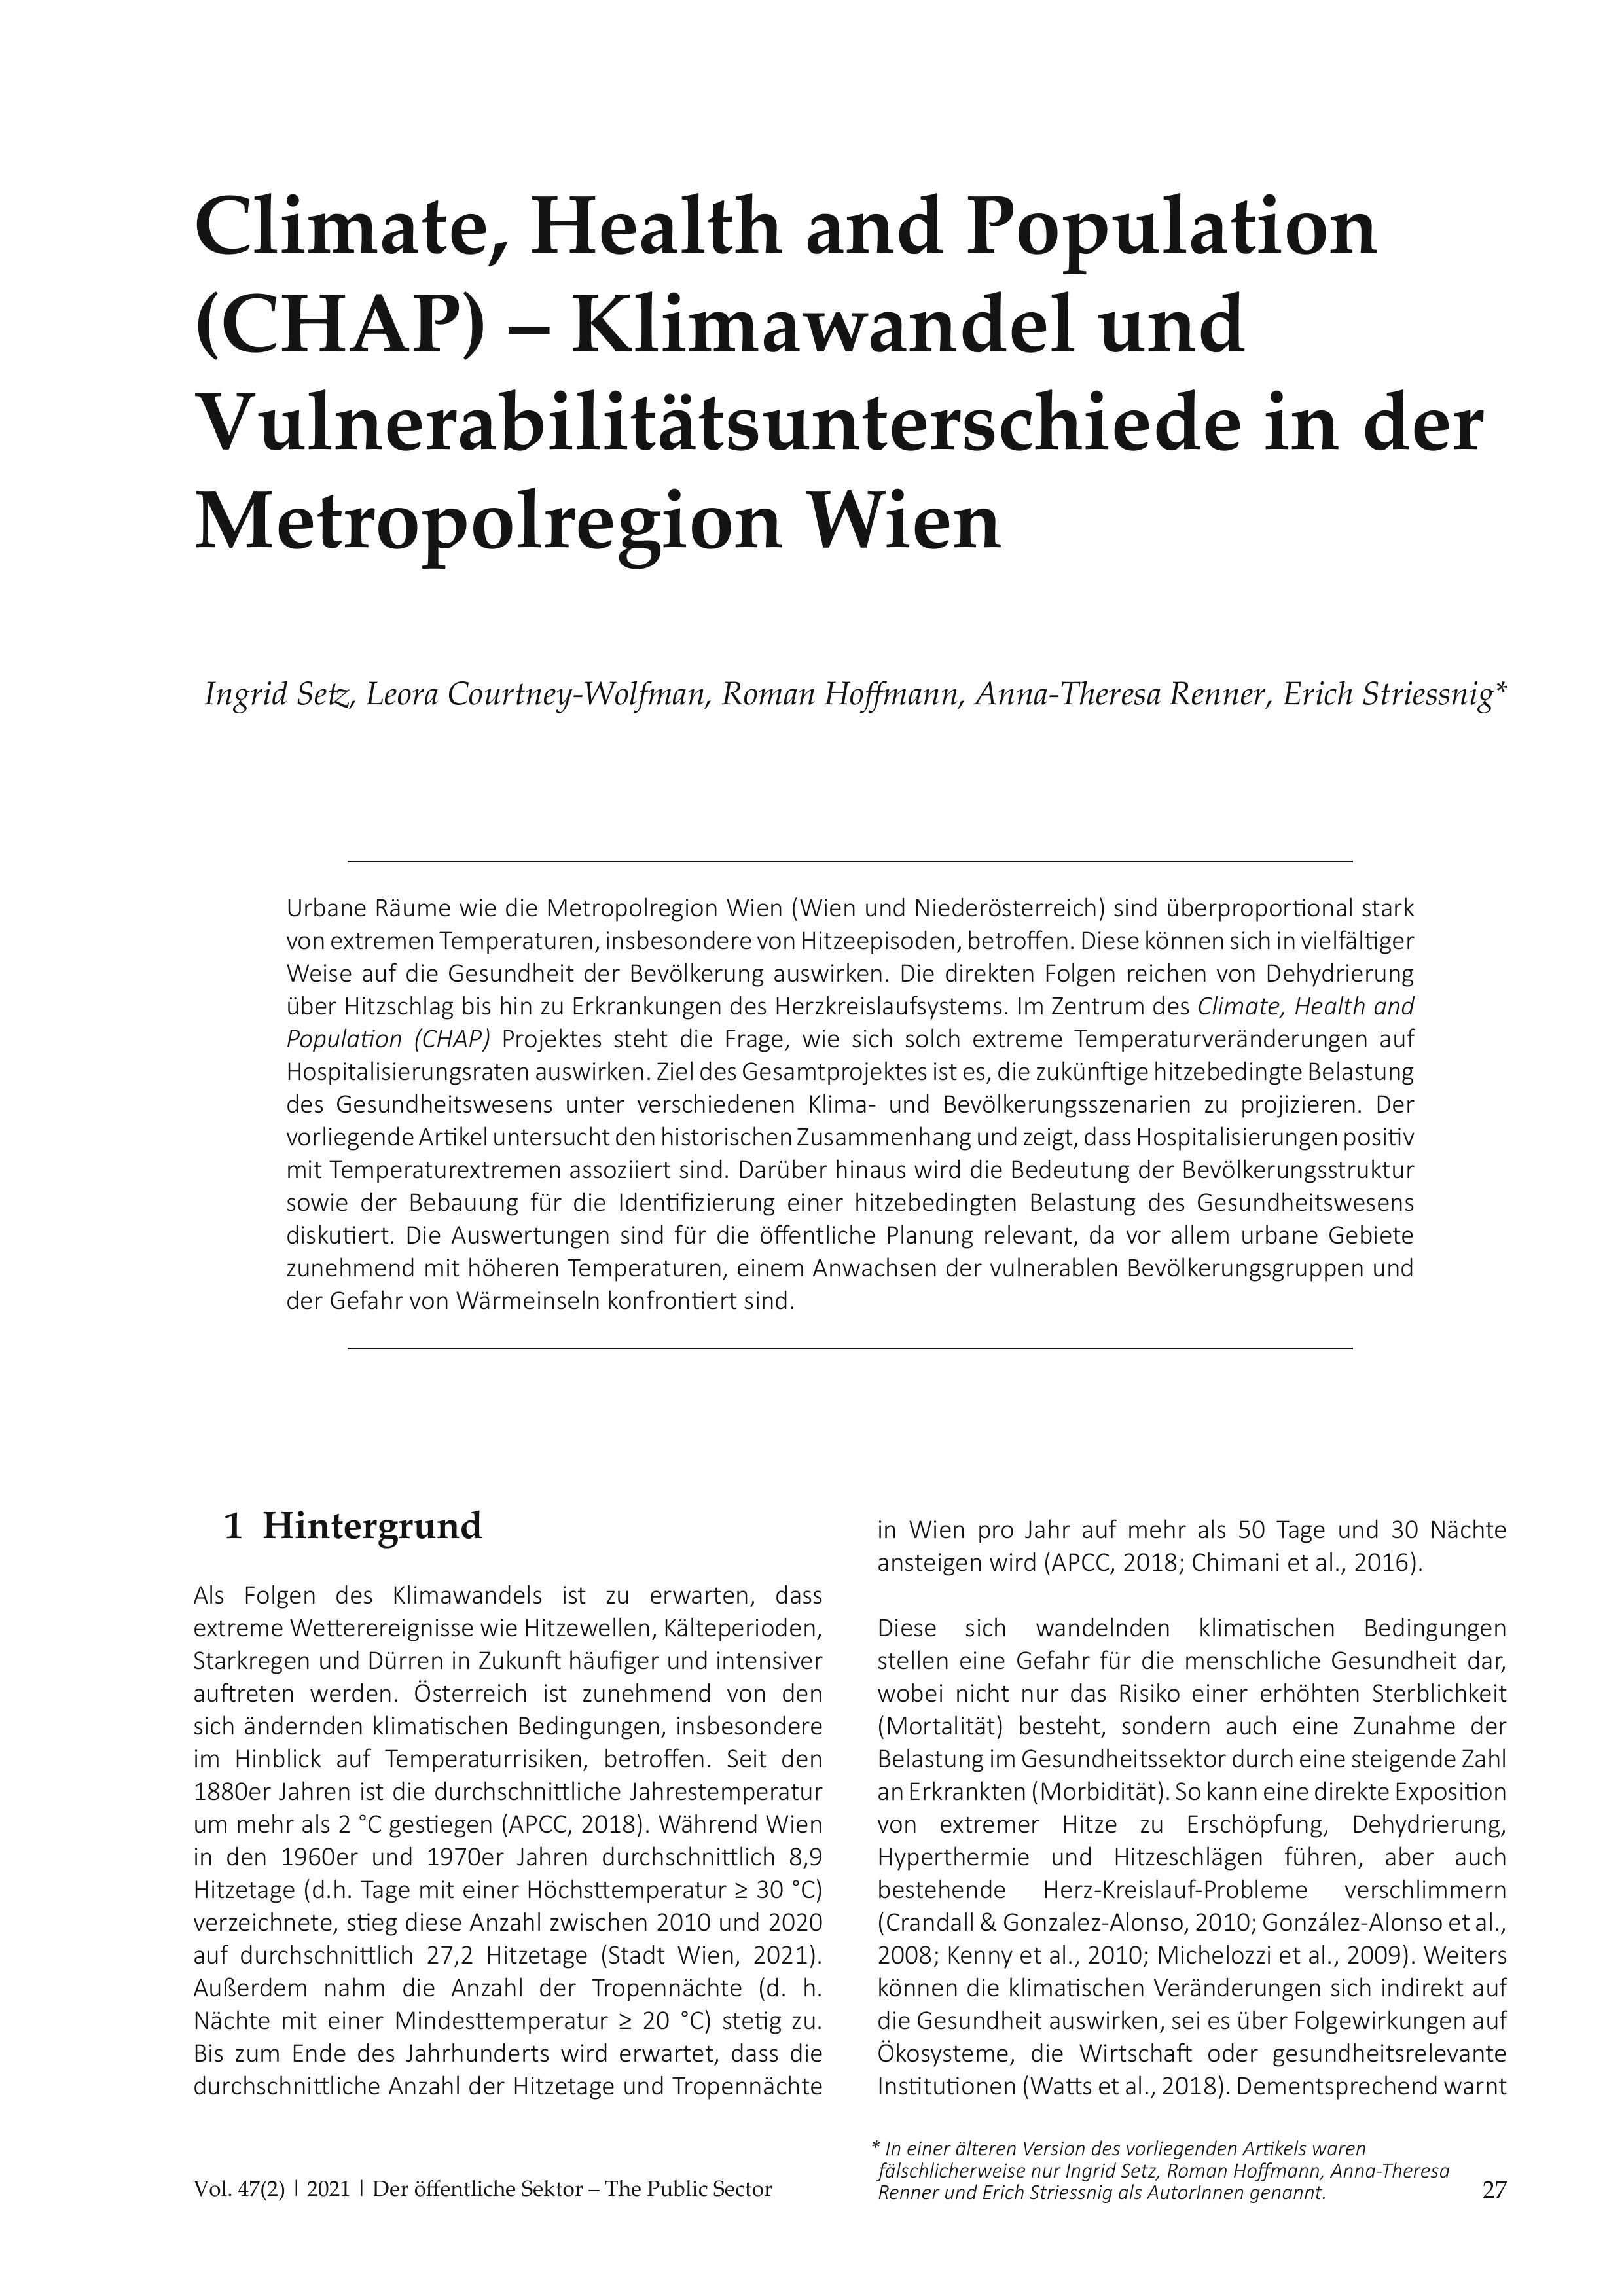 Climate, Health and Population (CHAP) – Klimawandel und Vulnerabilitätsunterschiede in der Metropolregion Wien